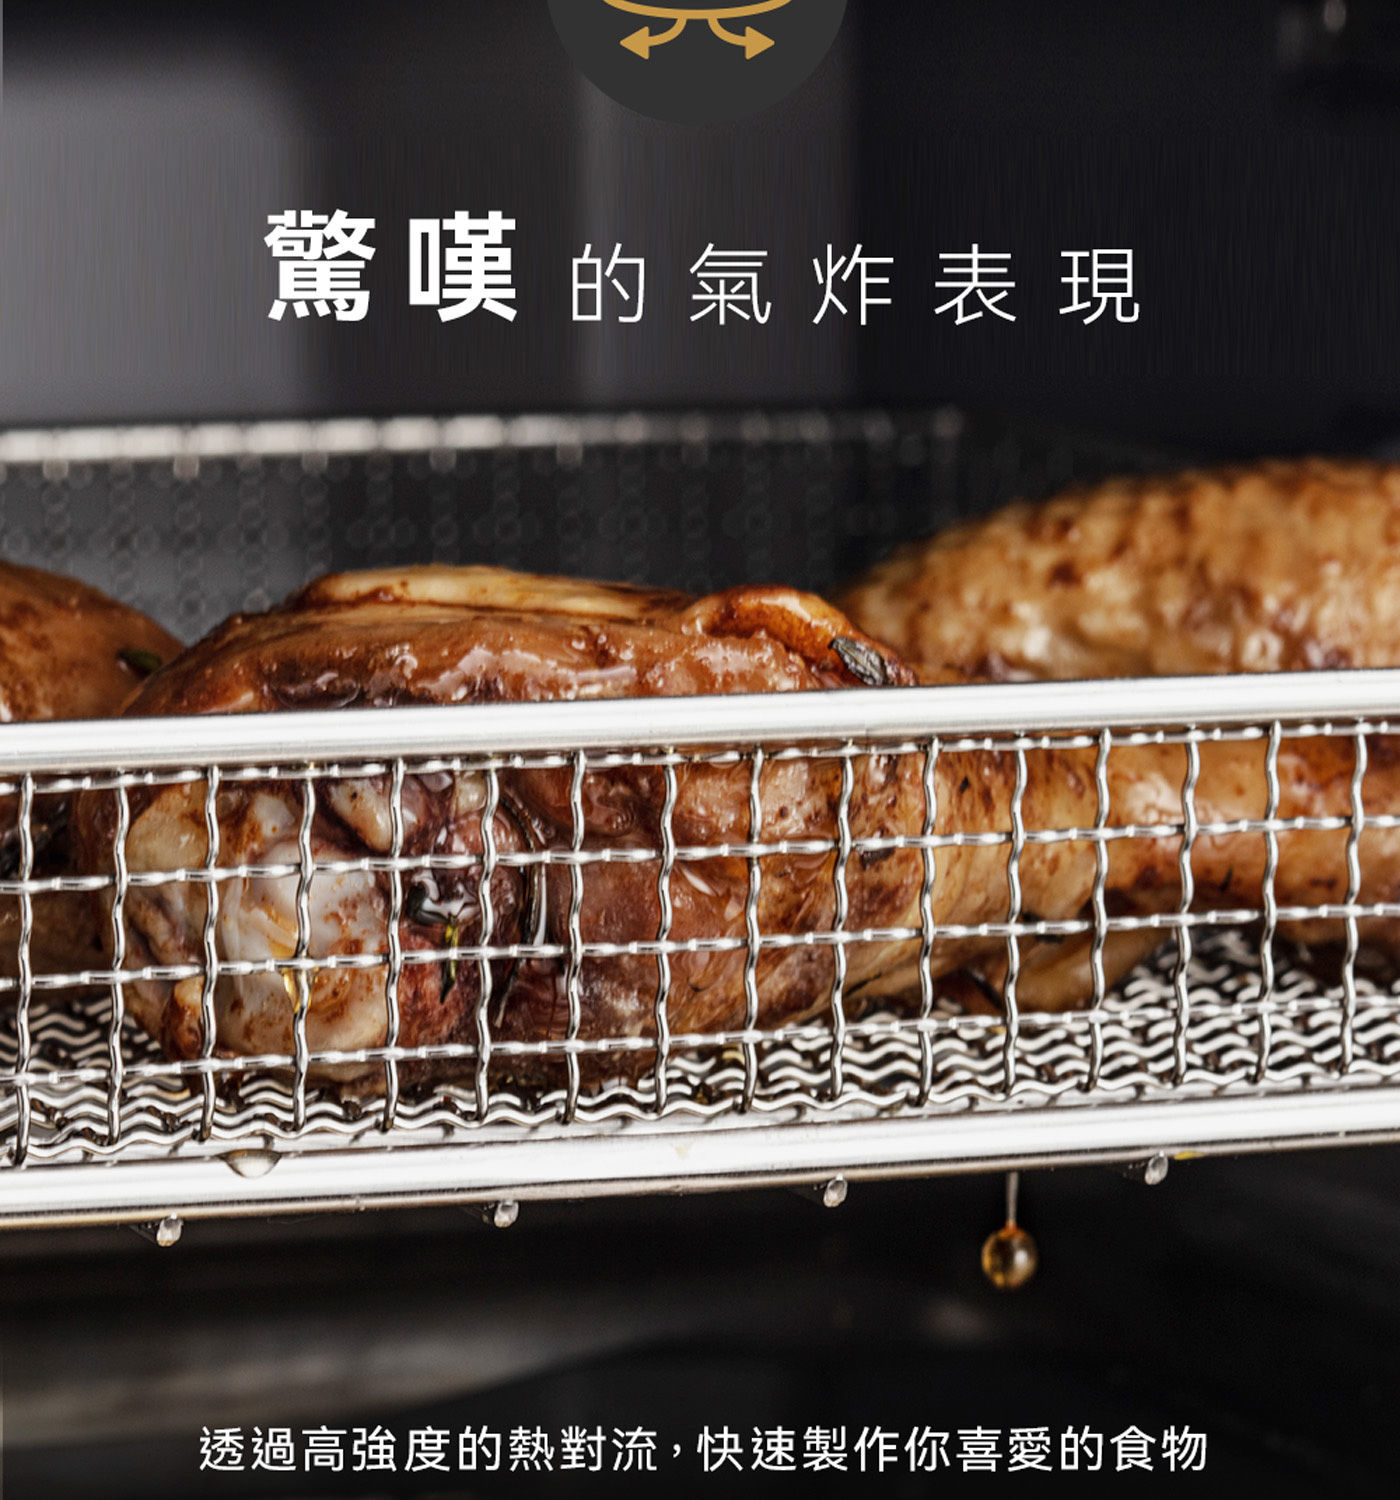 美膳雅 觸控式氣炸烤箱 透過高強度的熱對流 快速製作你喜愛的食物